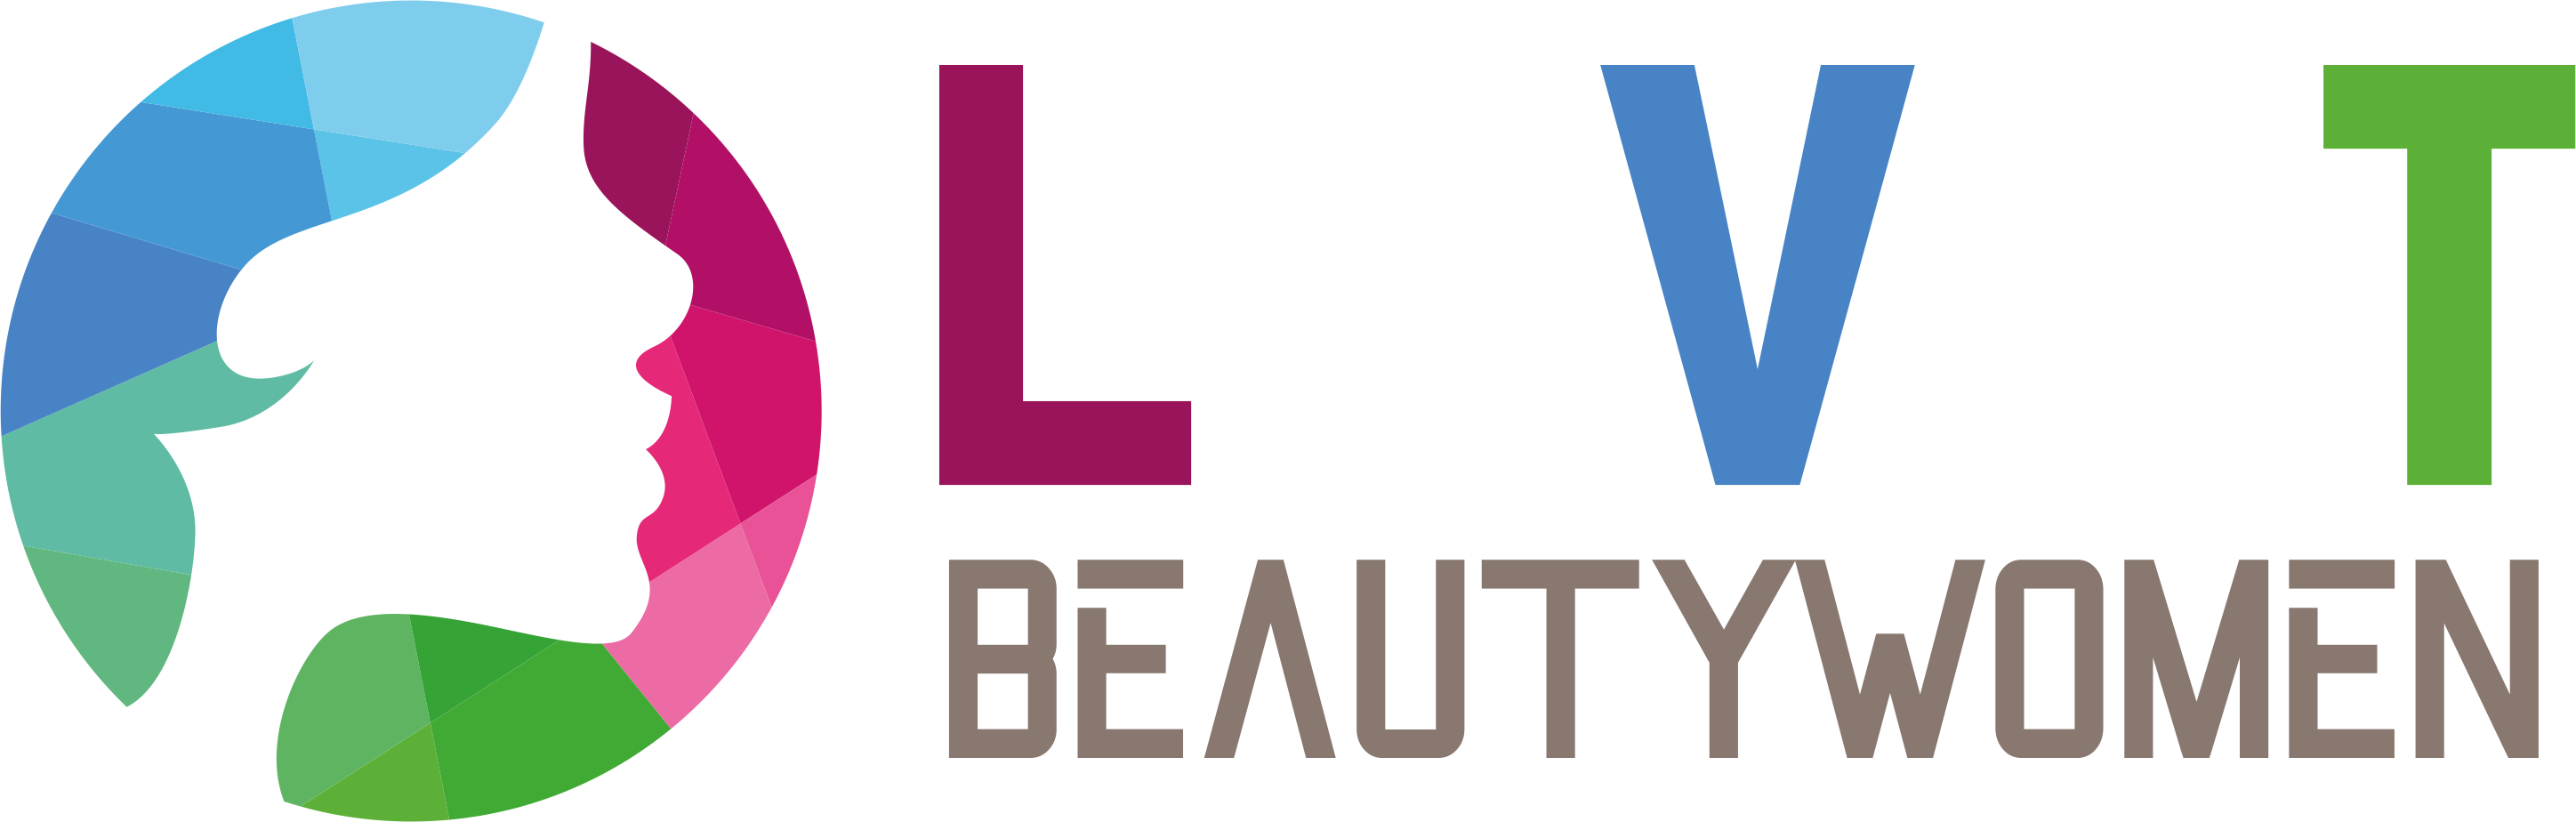 LVT Beauty Woman Logo